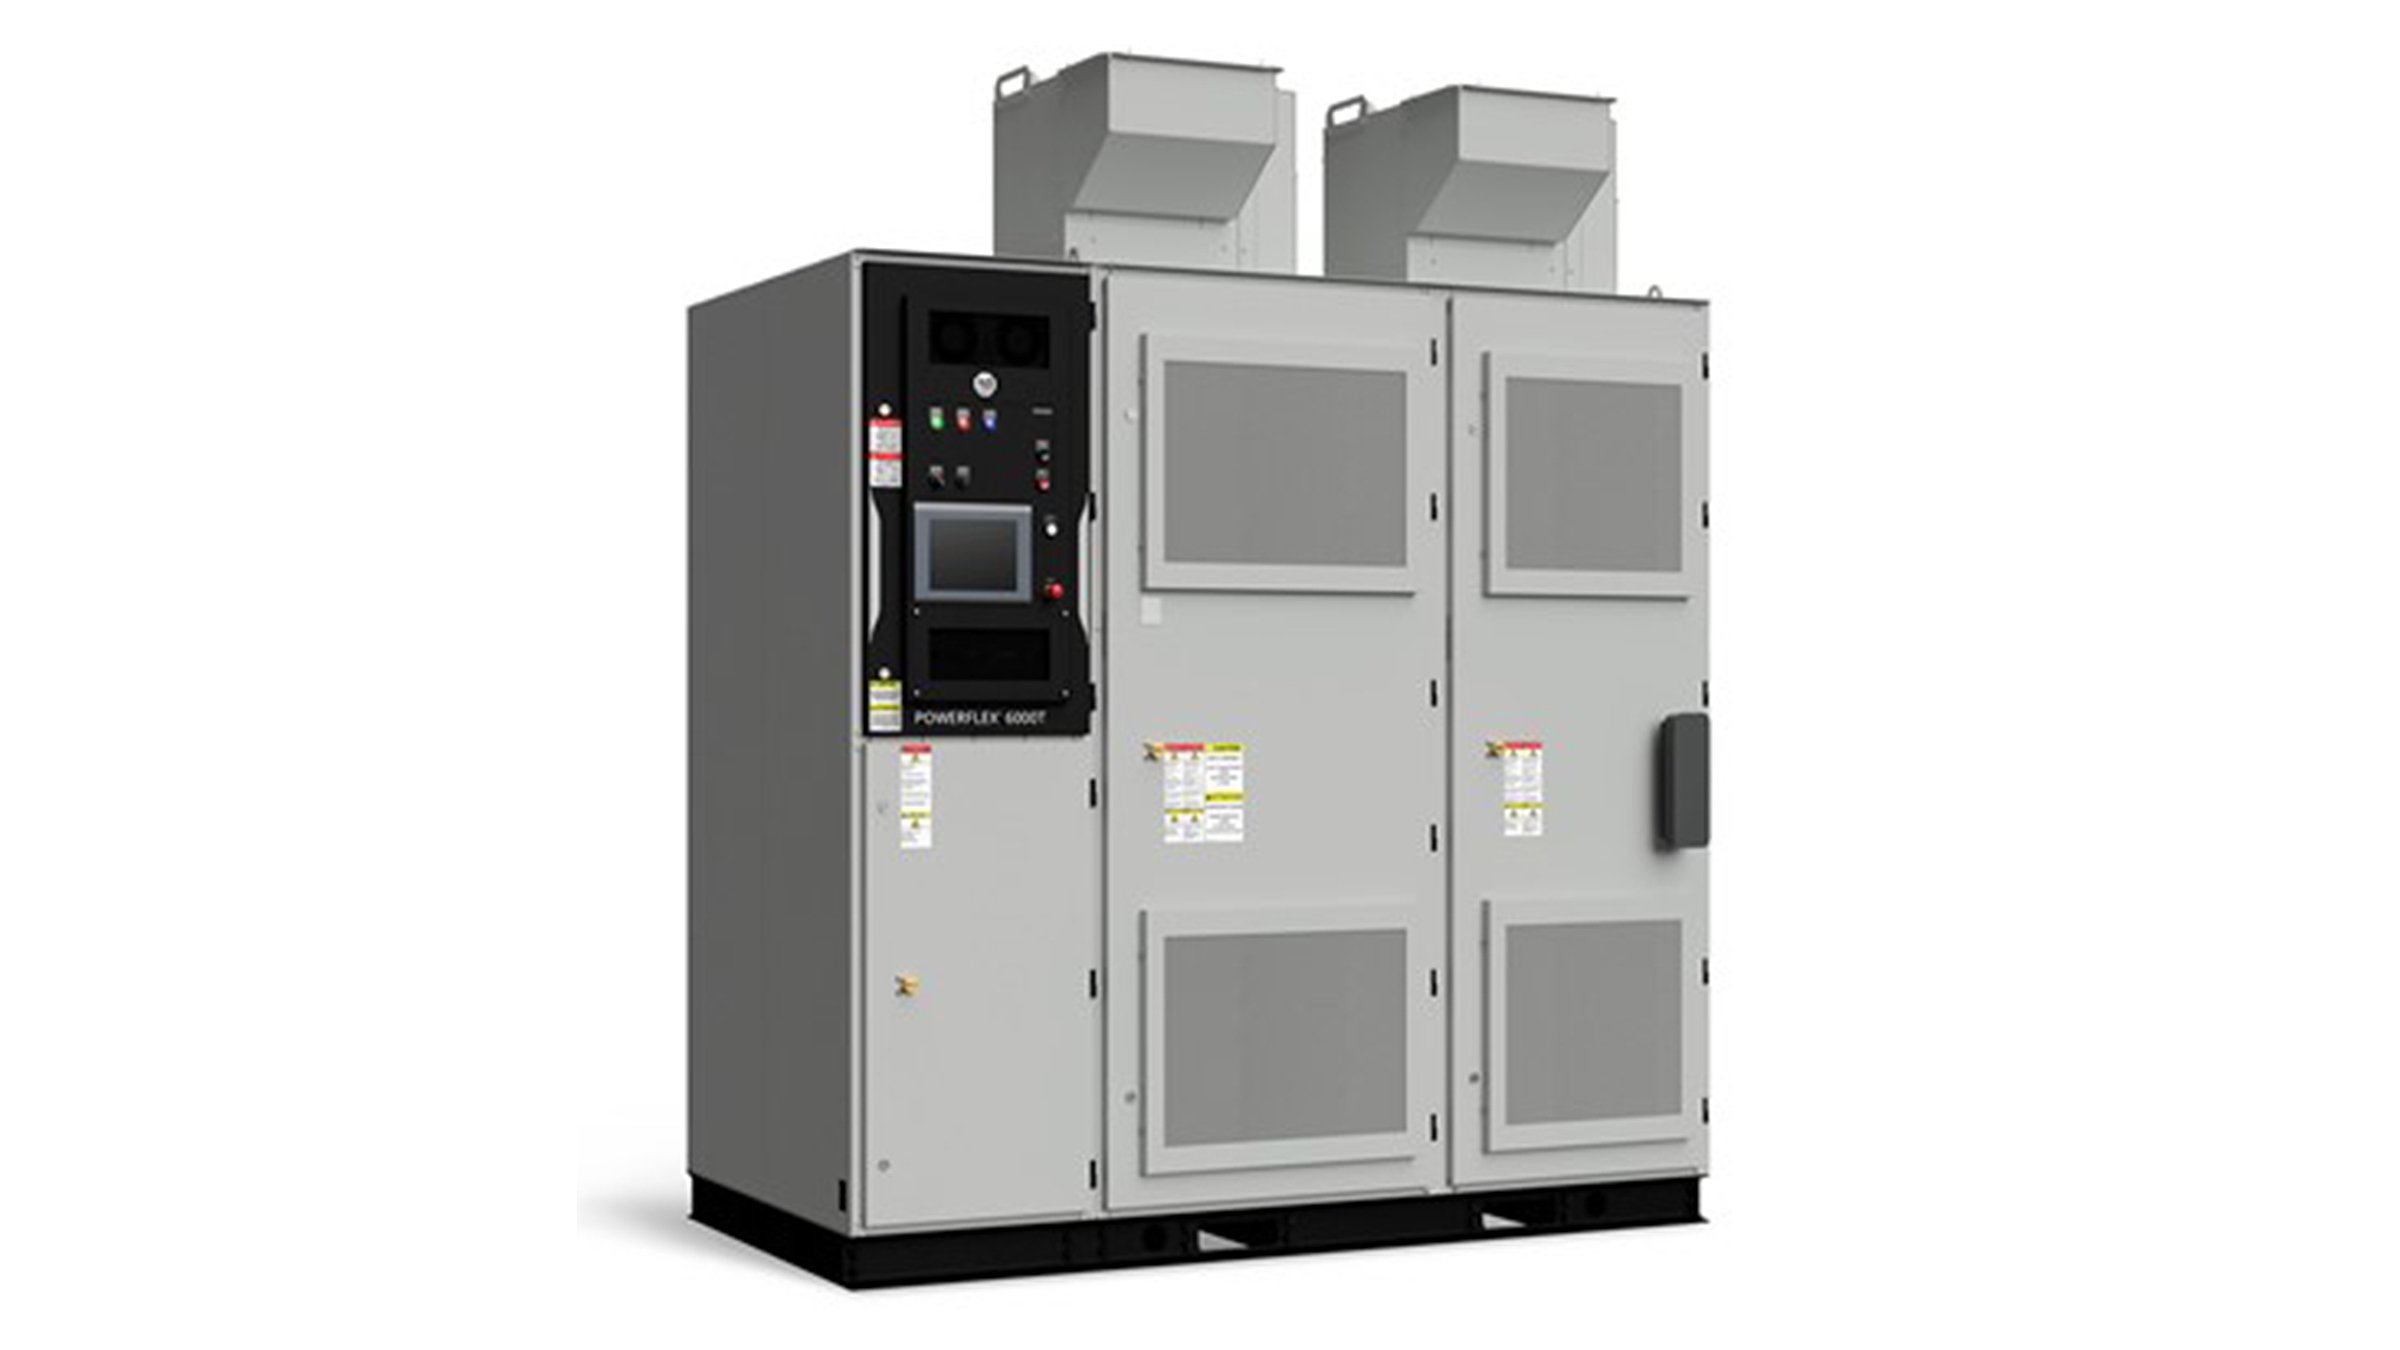 Tre armadi metallici alti e grigi affiancati costituiscono l’unità di azionamento PowerFlex 6000T di Rockwell Automation, utilizzata per controllare i motori nelle applicazioni industriali pesanti.